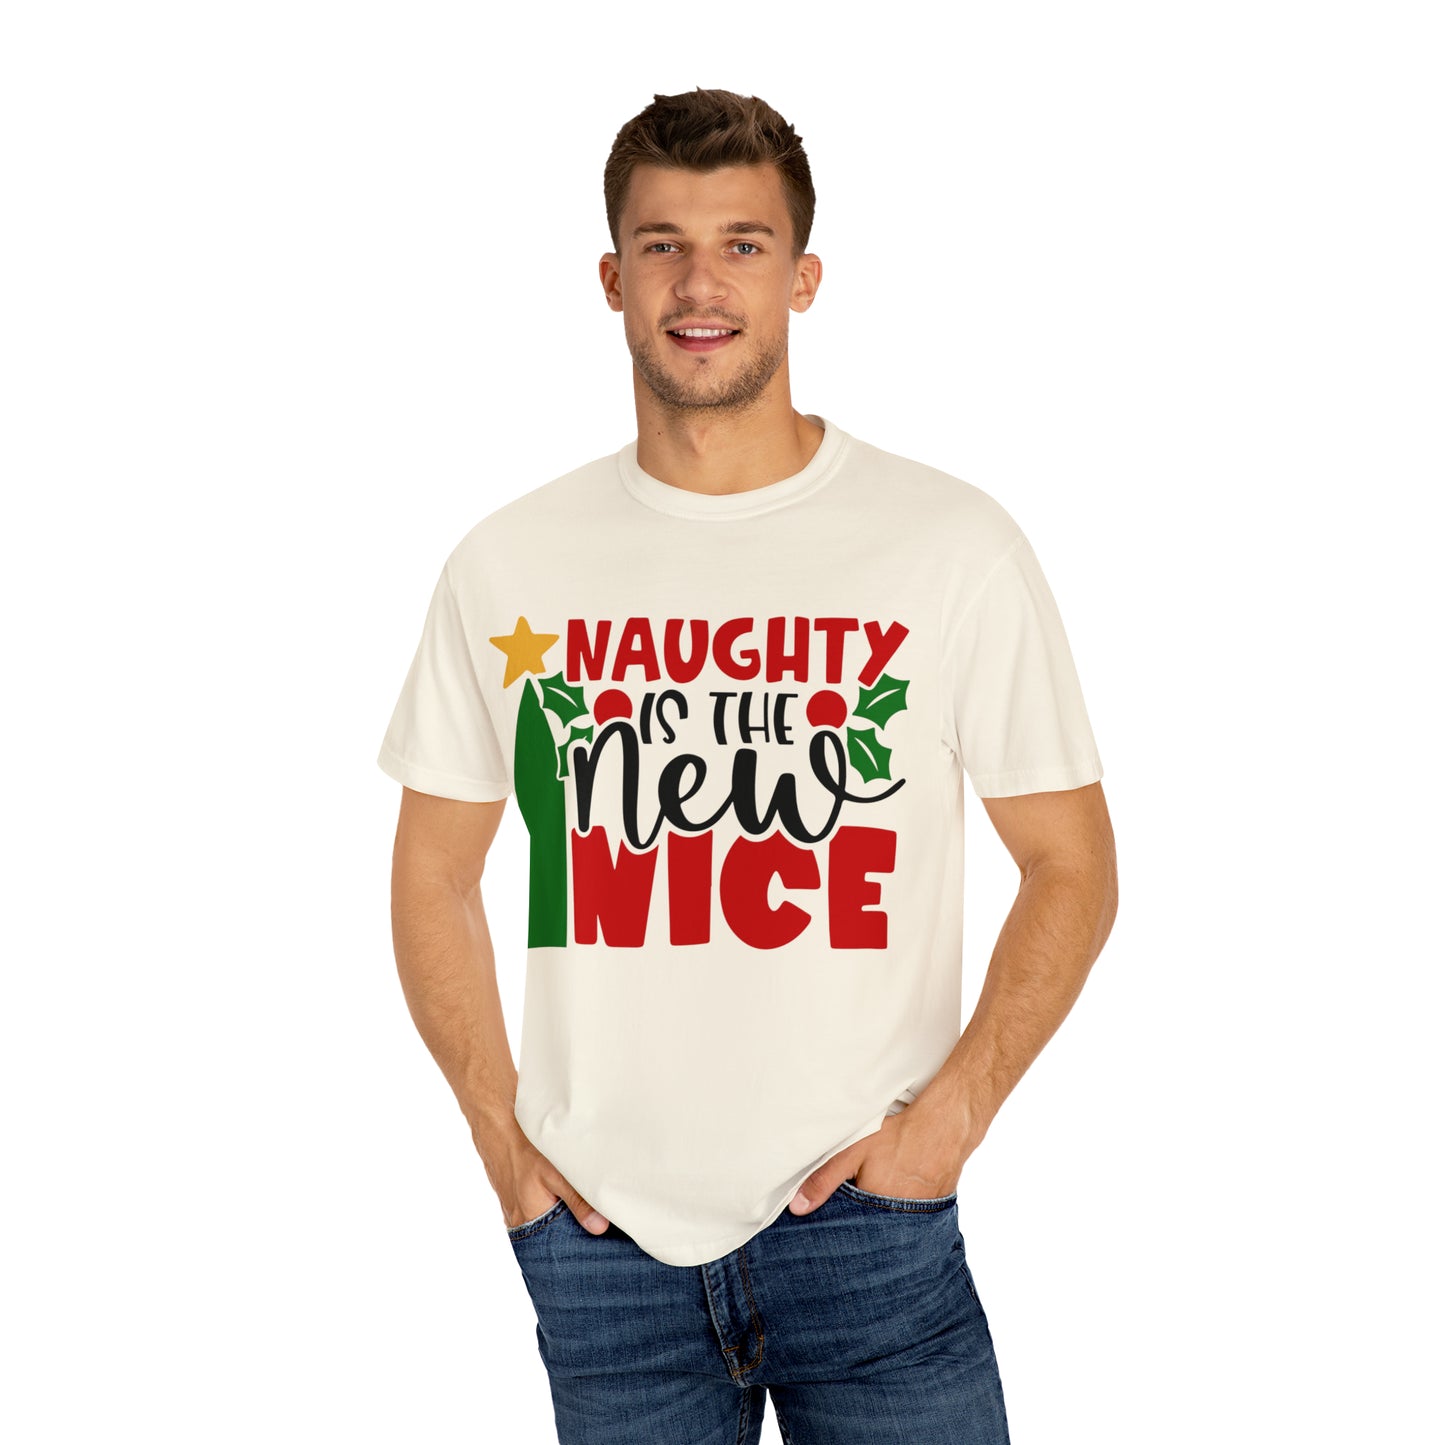 Naughty Is The New Nice Shirt, Funny Christmas Shirt, Christmas Party Shirt, Sarcastic Christmas Shirt, Holiday Shirt, Naughty Nice Shirt